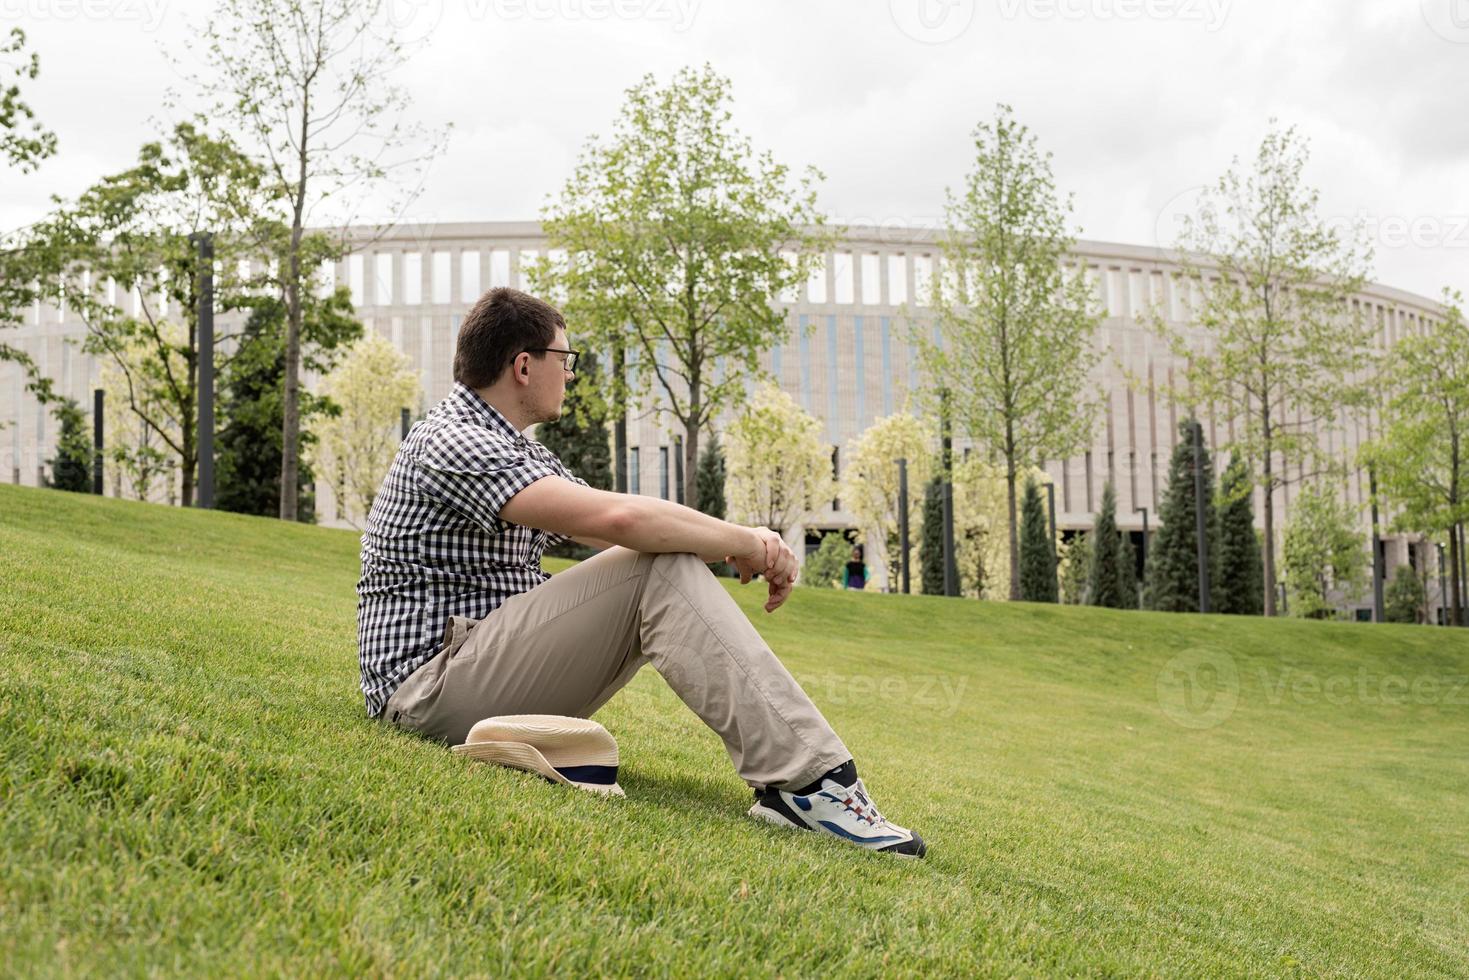 jeune homme réfléchi assis sur l'herbe dans le parc photo